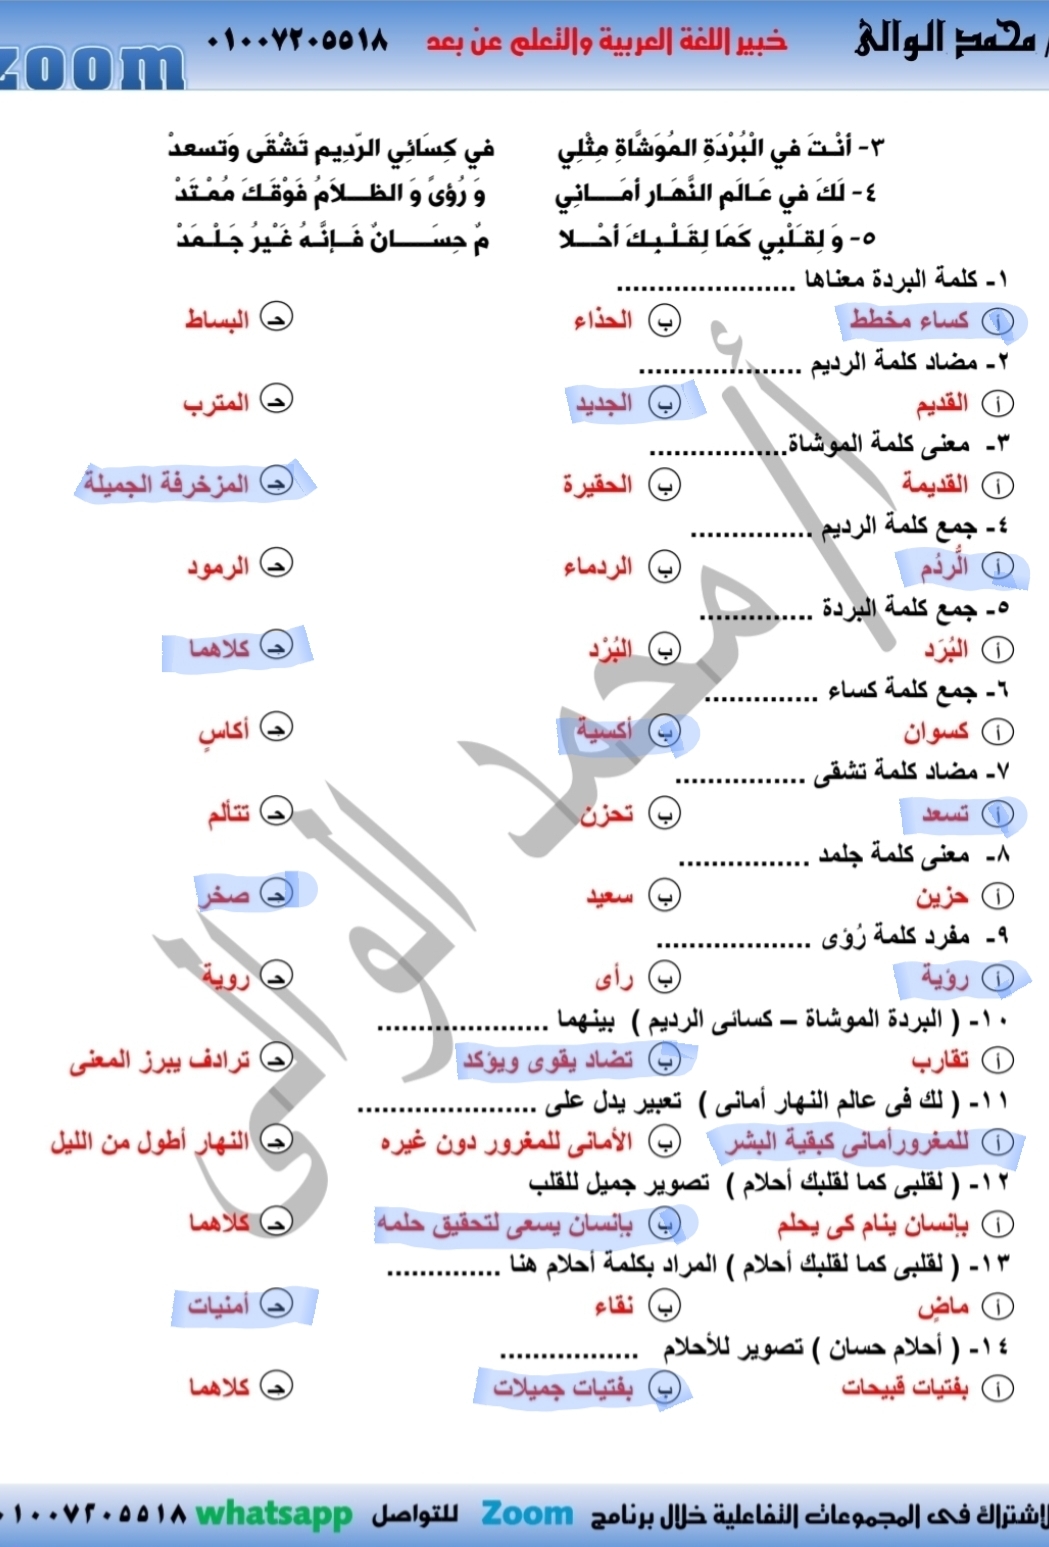 مراجعة درس فى رحاب الإنسانية لغة عربية للصف السادس الإبتدائى الترم الثانى